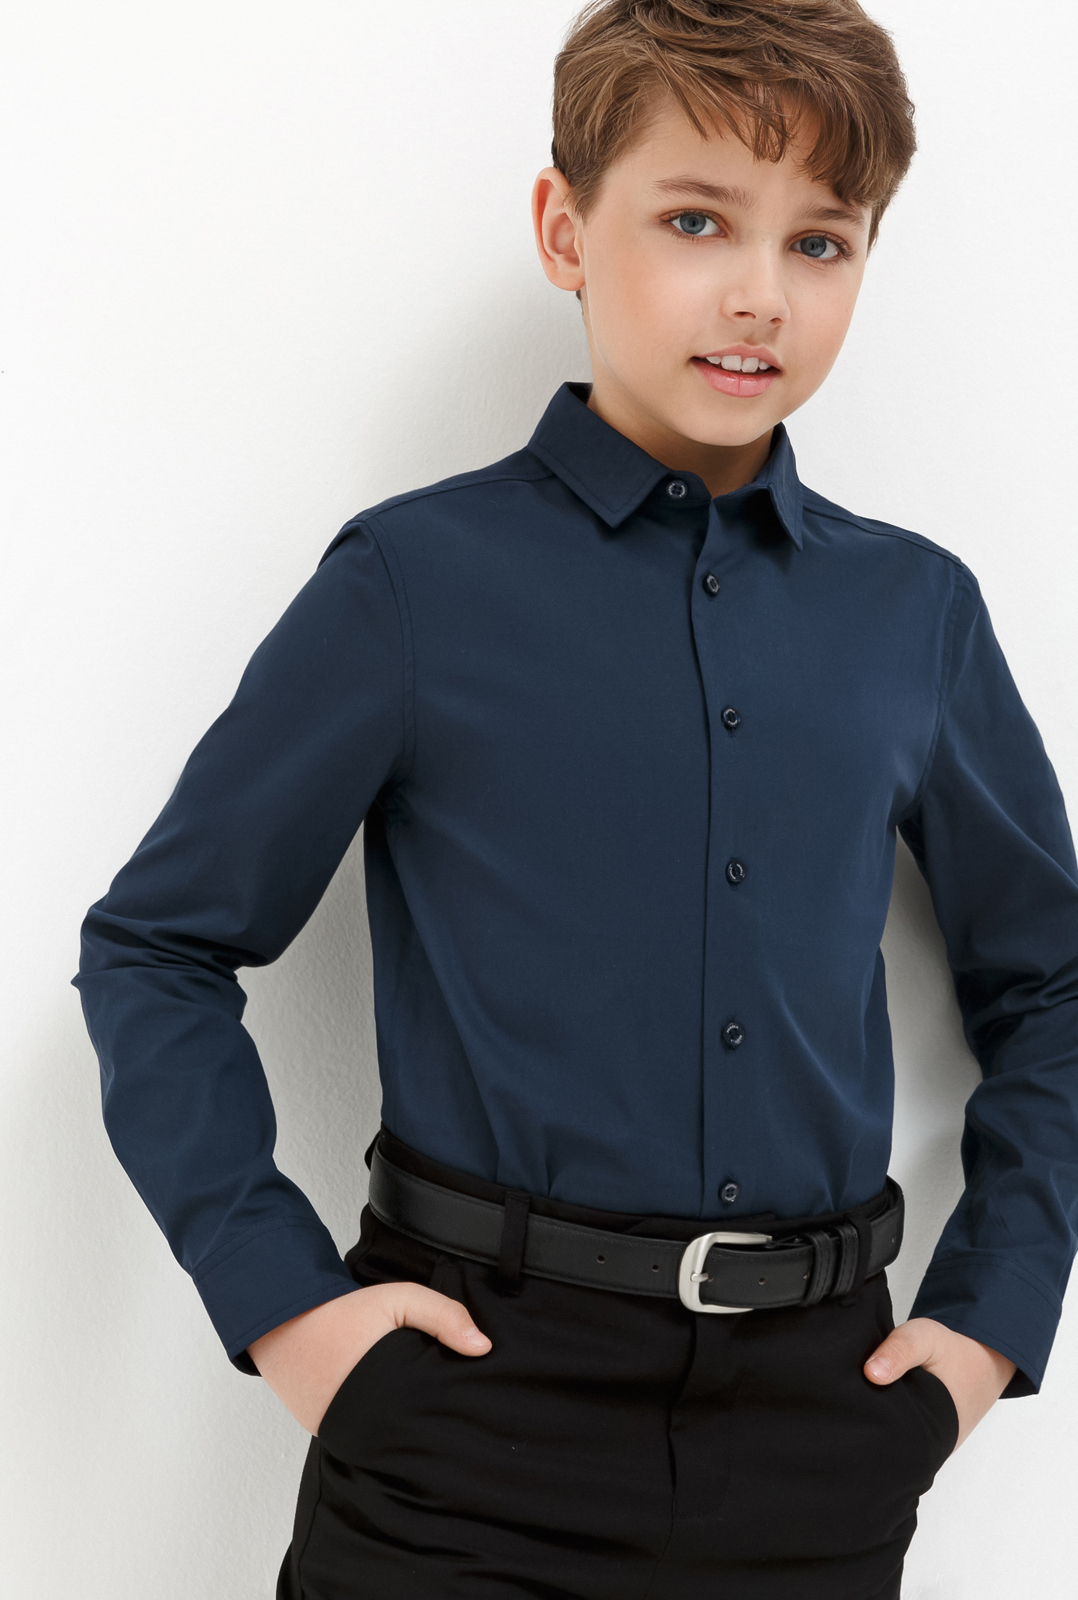 Рубашка для мальчика Acoola Houston, цвет: темно-голубой. 20140280033_600. Размер 128